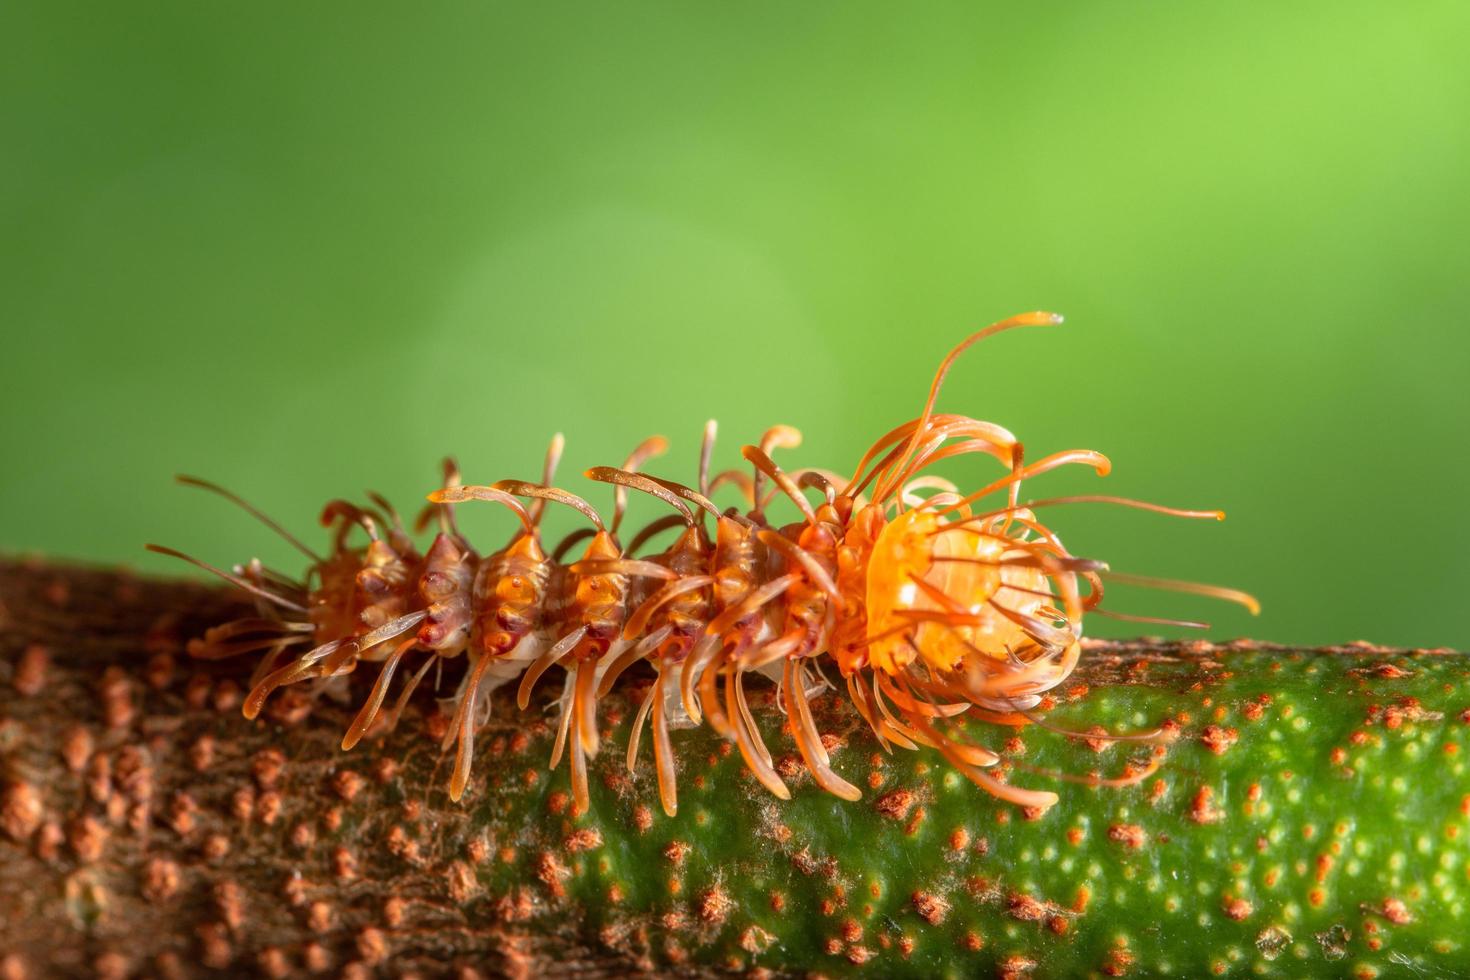 worm op een blad, close-upfoto foto